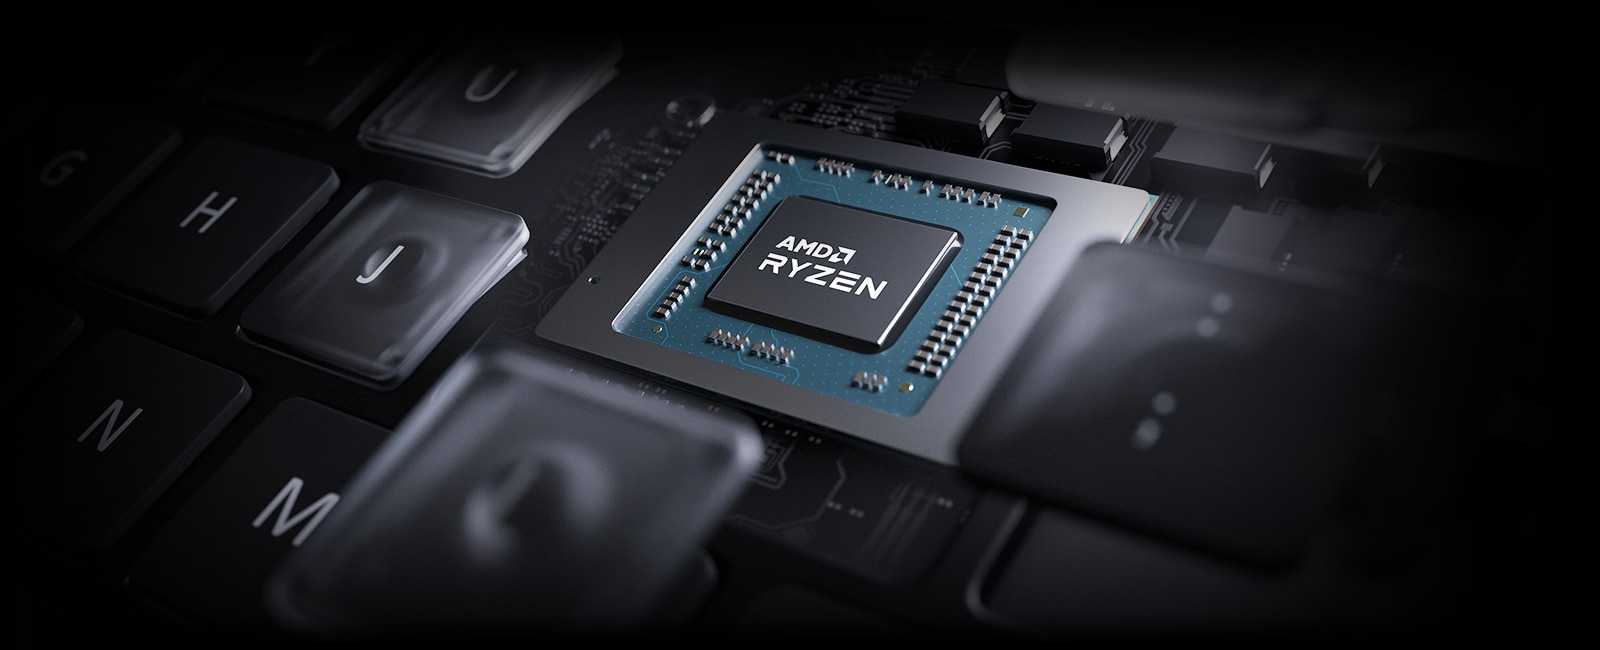 Leistungsstarker AMD-Prozessor unterstützt leistungsstarke Leistung.